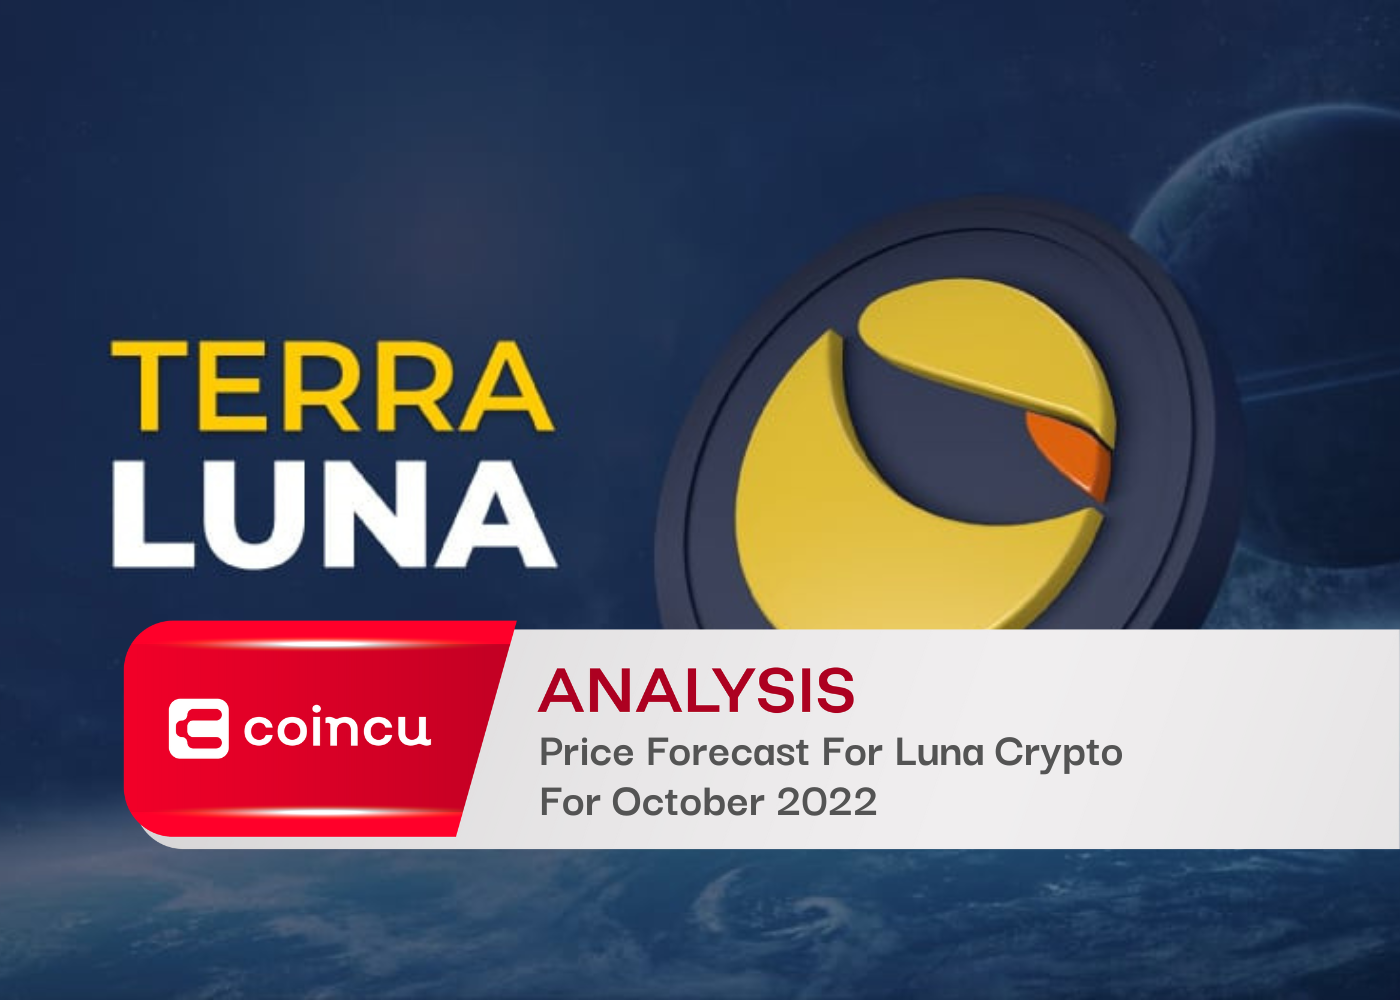 Price Forecast For Luna Crypto